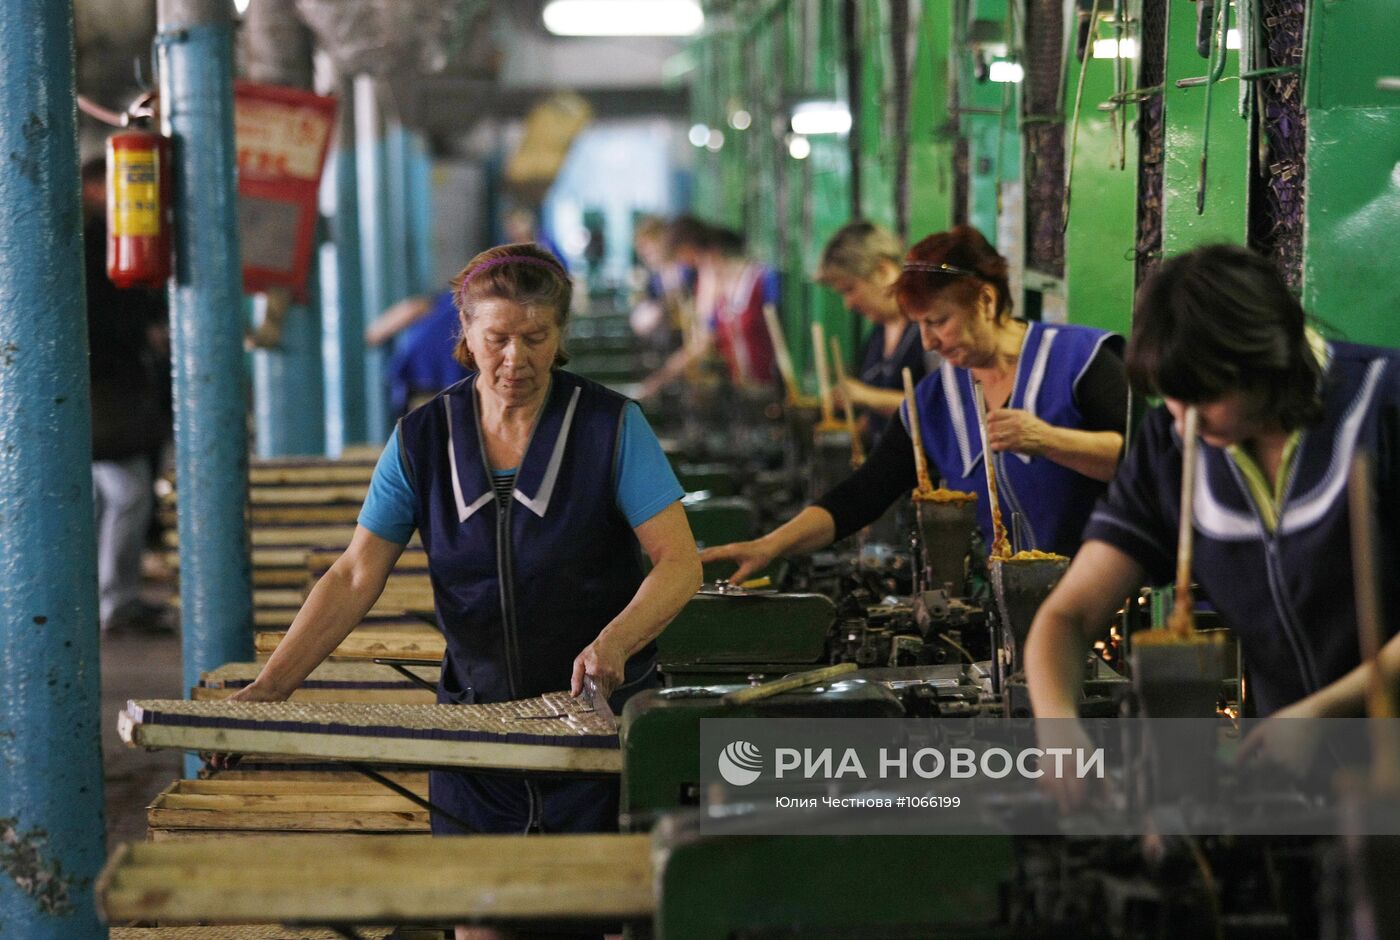 Работа спичечной фабрики "Победа" в селе Верхний Ломов